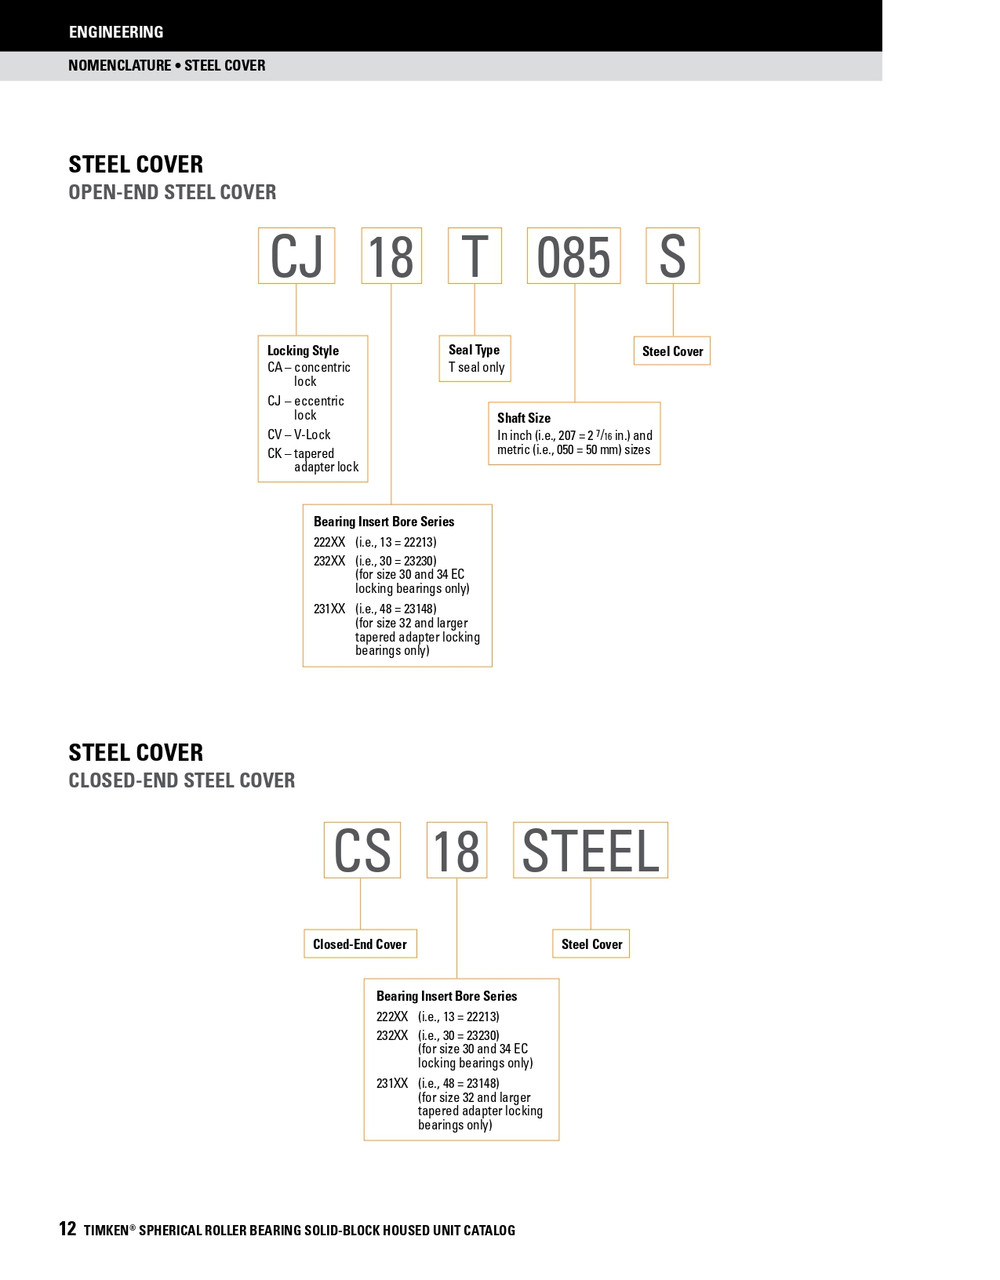 6-15/16" Timken SRB Steel Open End Cover w/Teflon Seal - TA/DV Taper Lock Bushing Type  CK38T615S